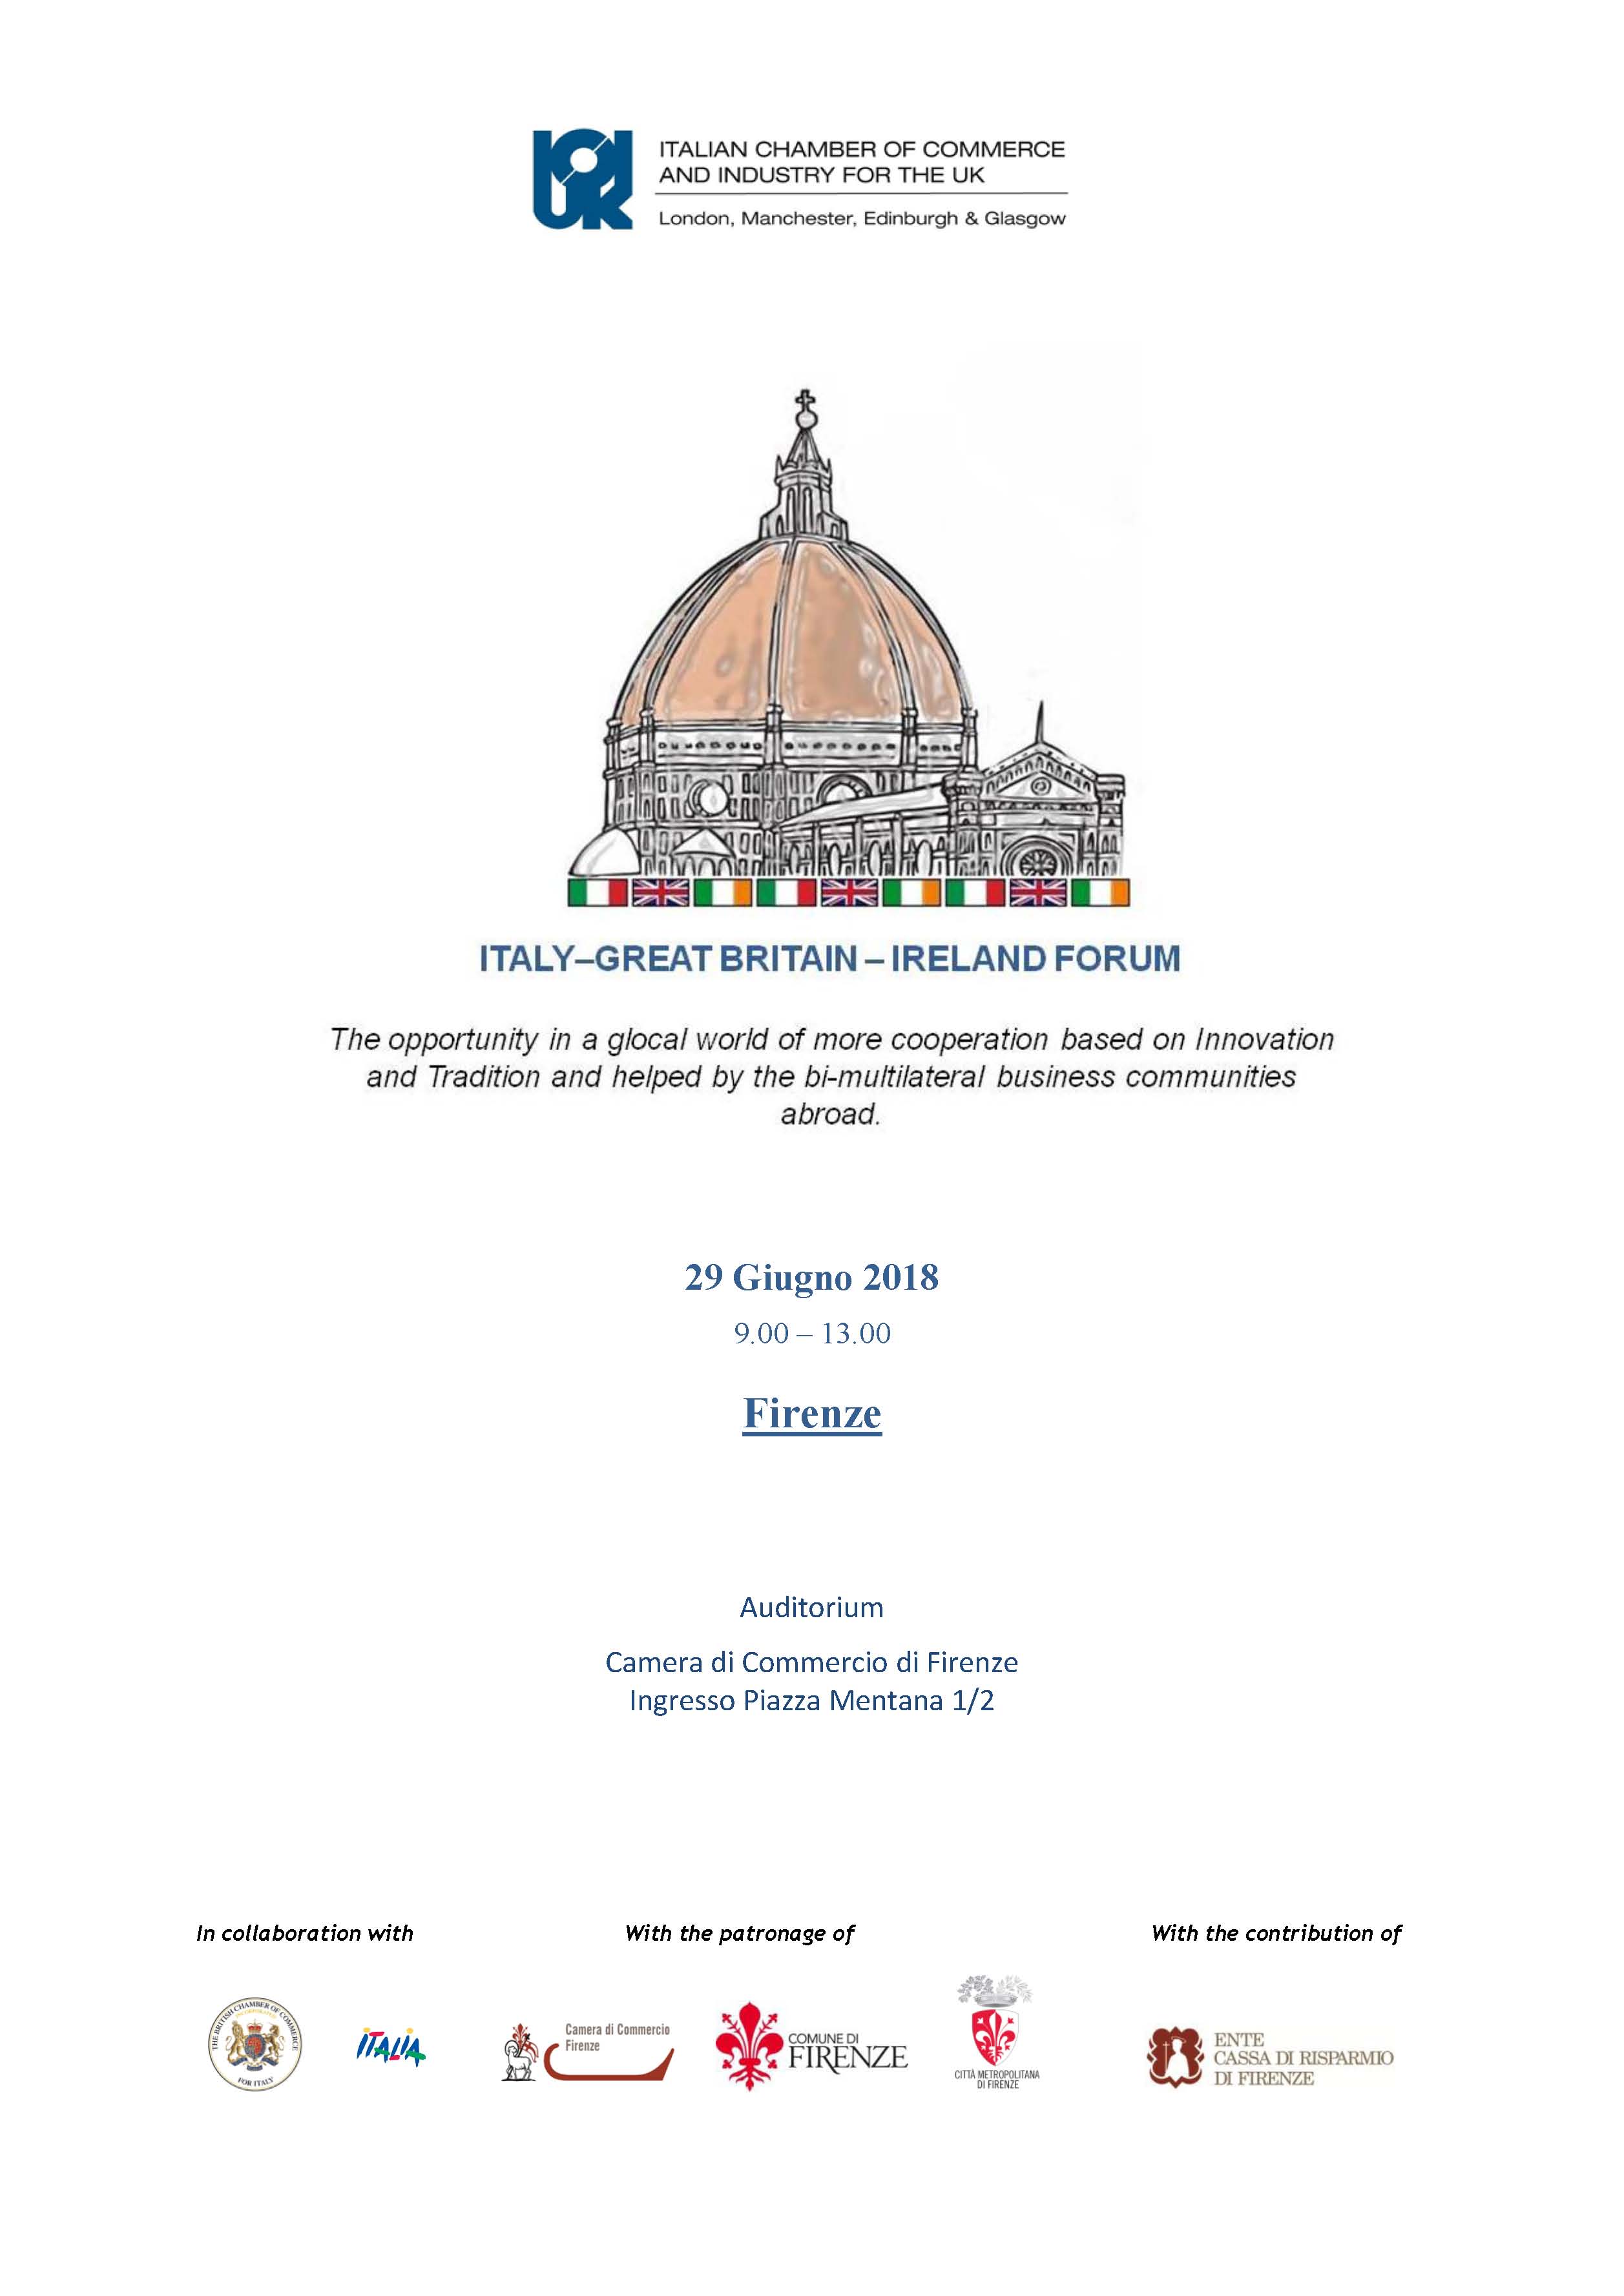 Italy, Great Britain and Ireland Forum alla Camera di Commercio di Firenze 